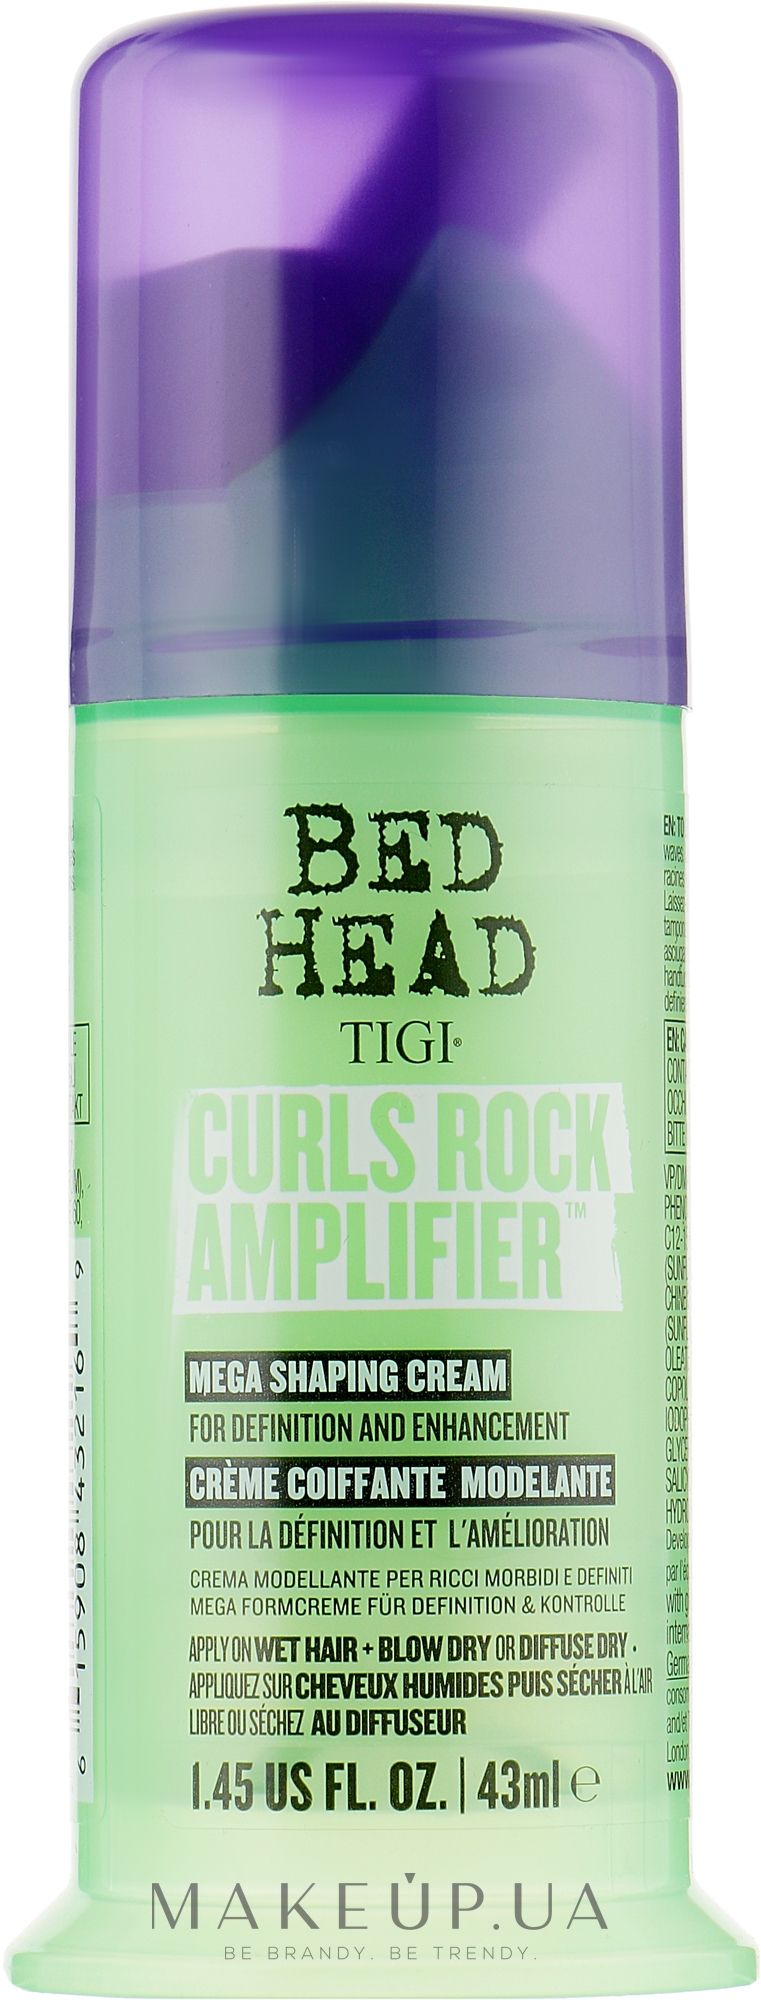 Крем для в'юнкого волосся - Tigi Bed Head Curls Rock Amplifier Curly Hair Cream — фото 43ml